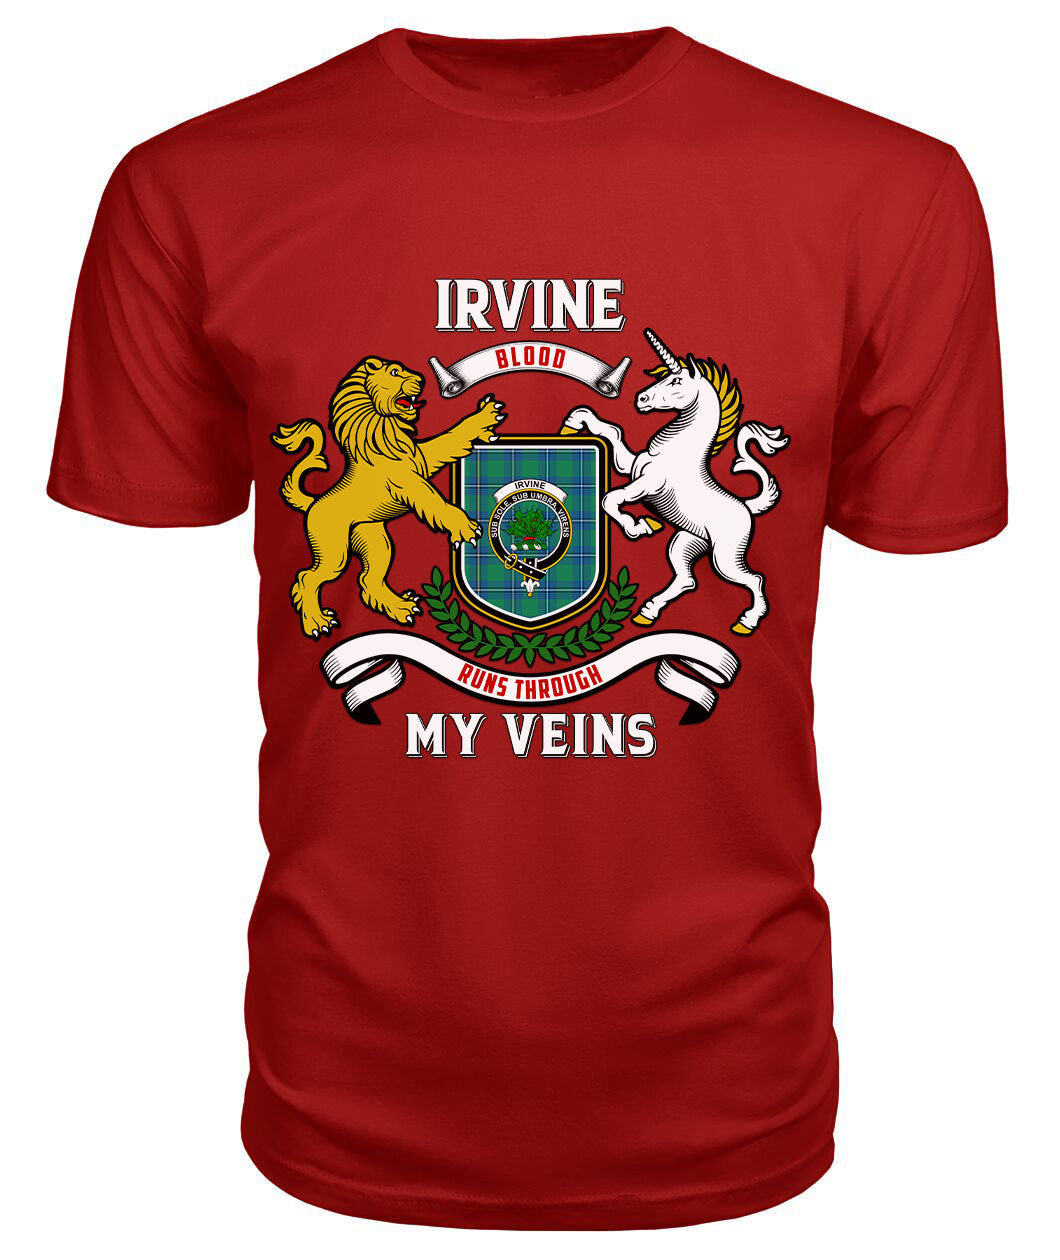 Irvine Ancient Tartan Crest 2D T-shirt - Blood Runs Through My Veins Style